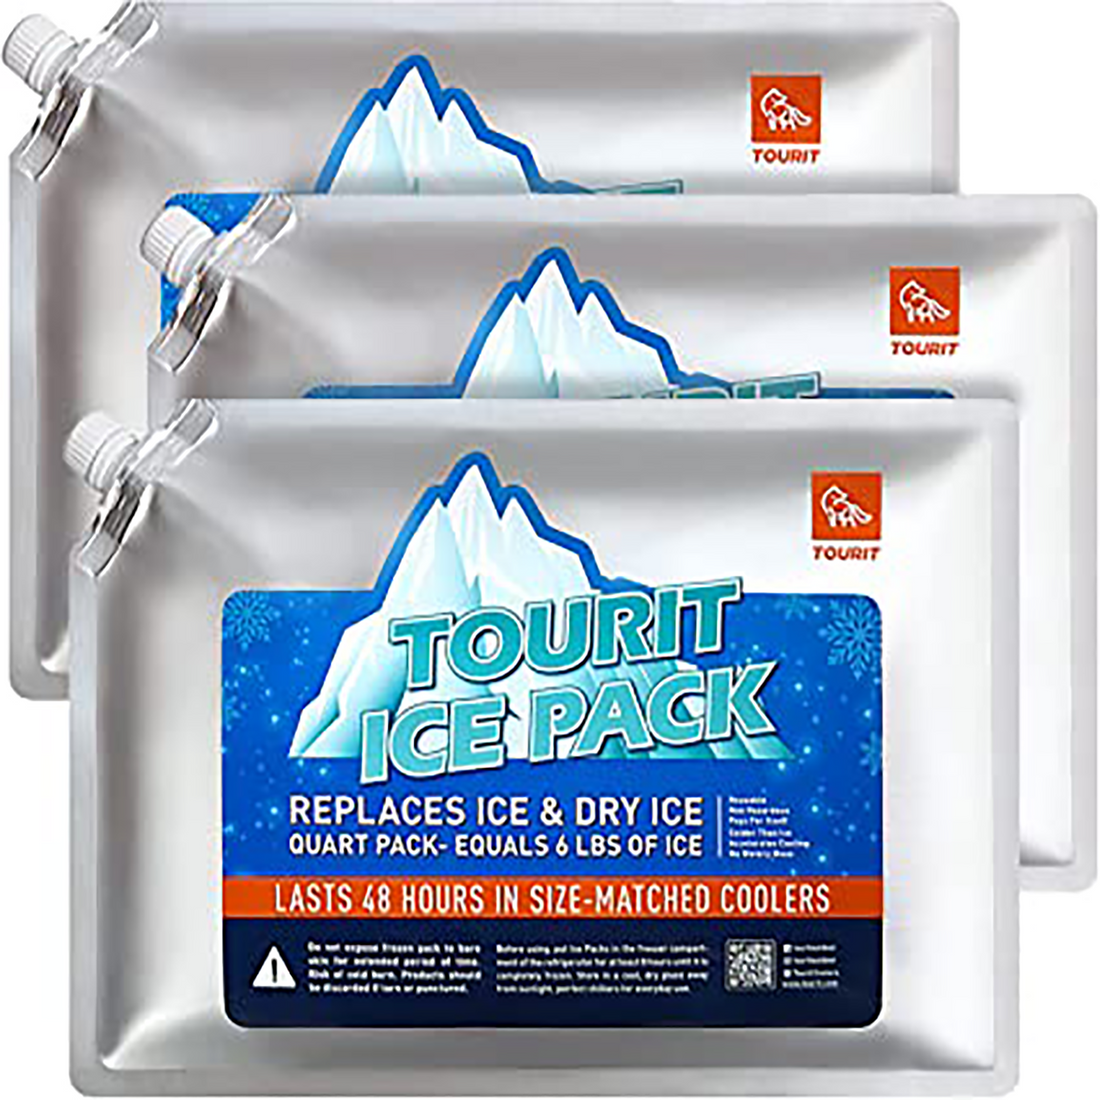 Reusable Ice Packs – TOURIT